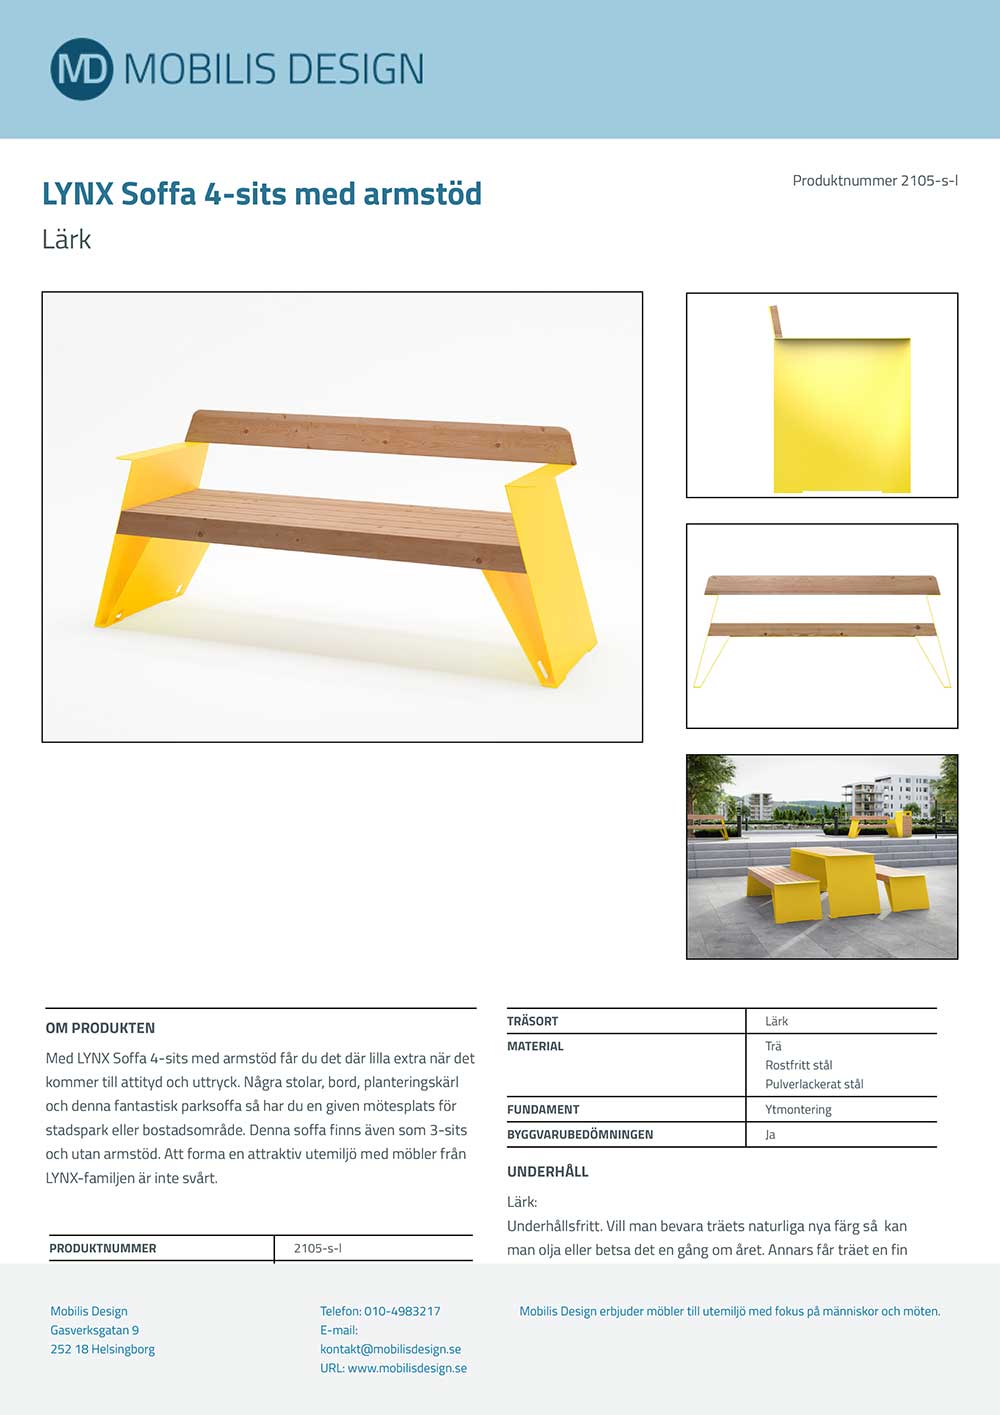 Produktblad för Lynx soffa på Mobilis Designs hemsida